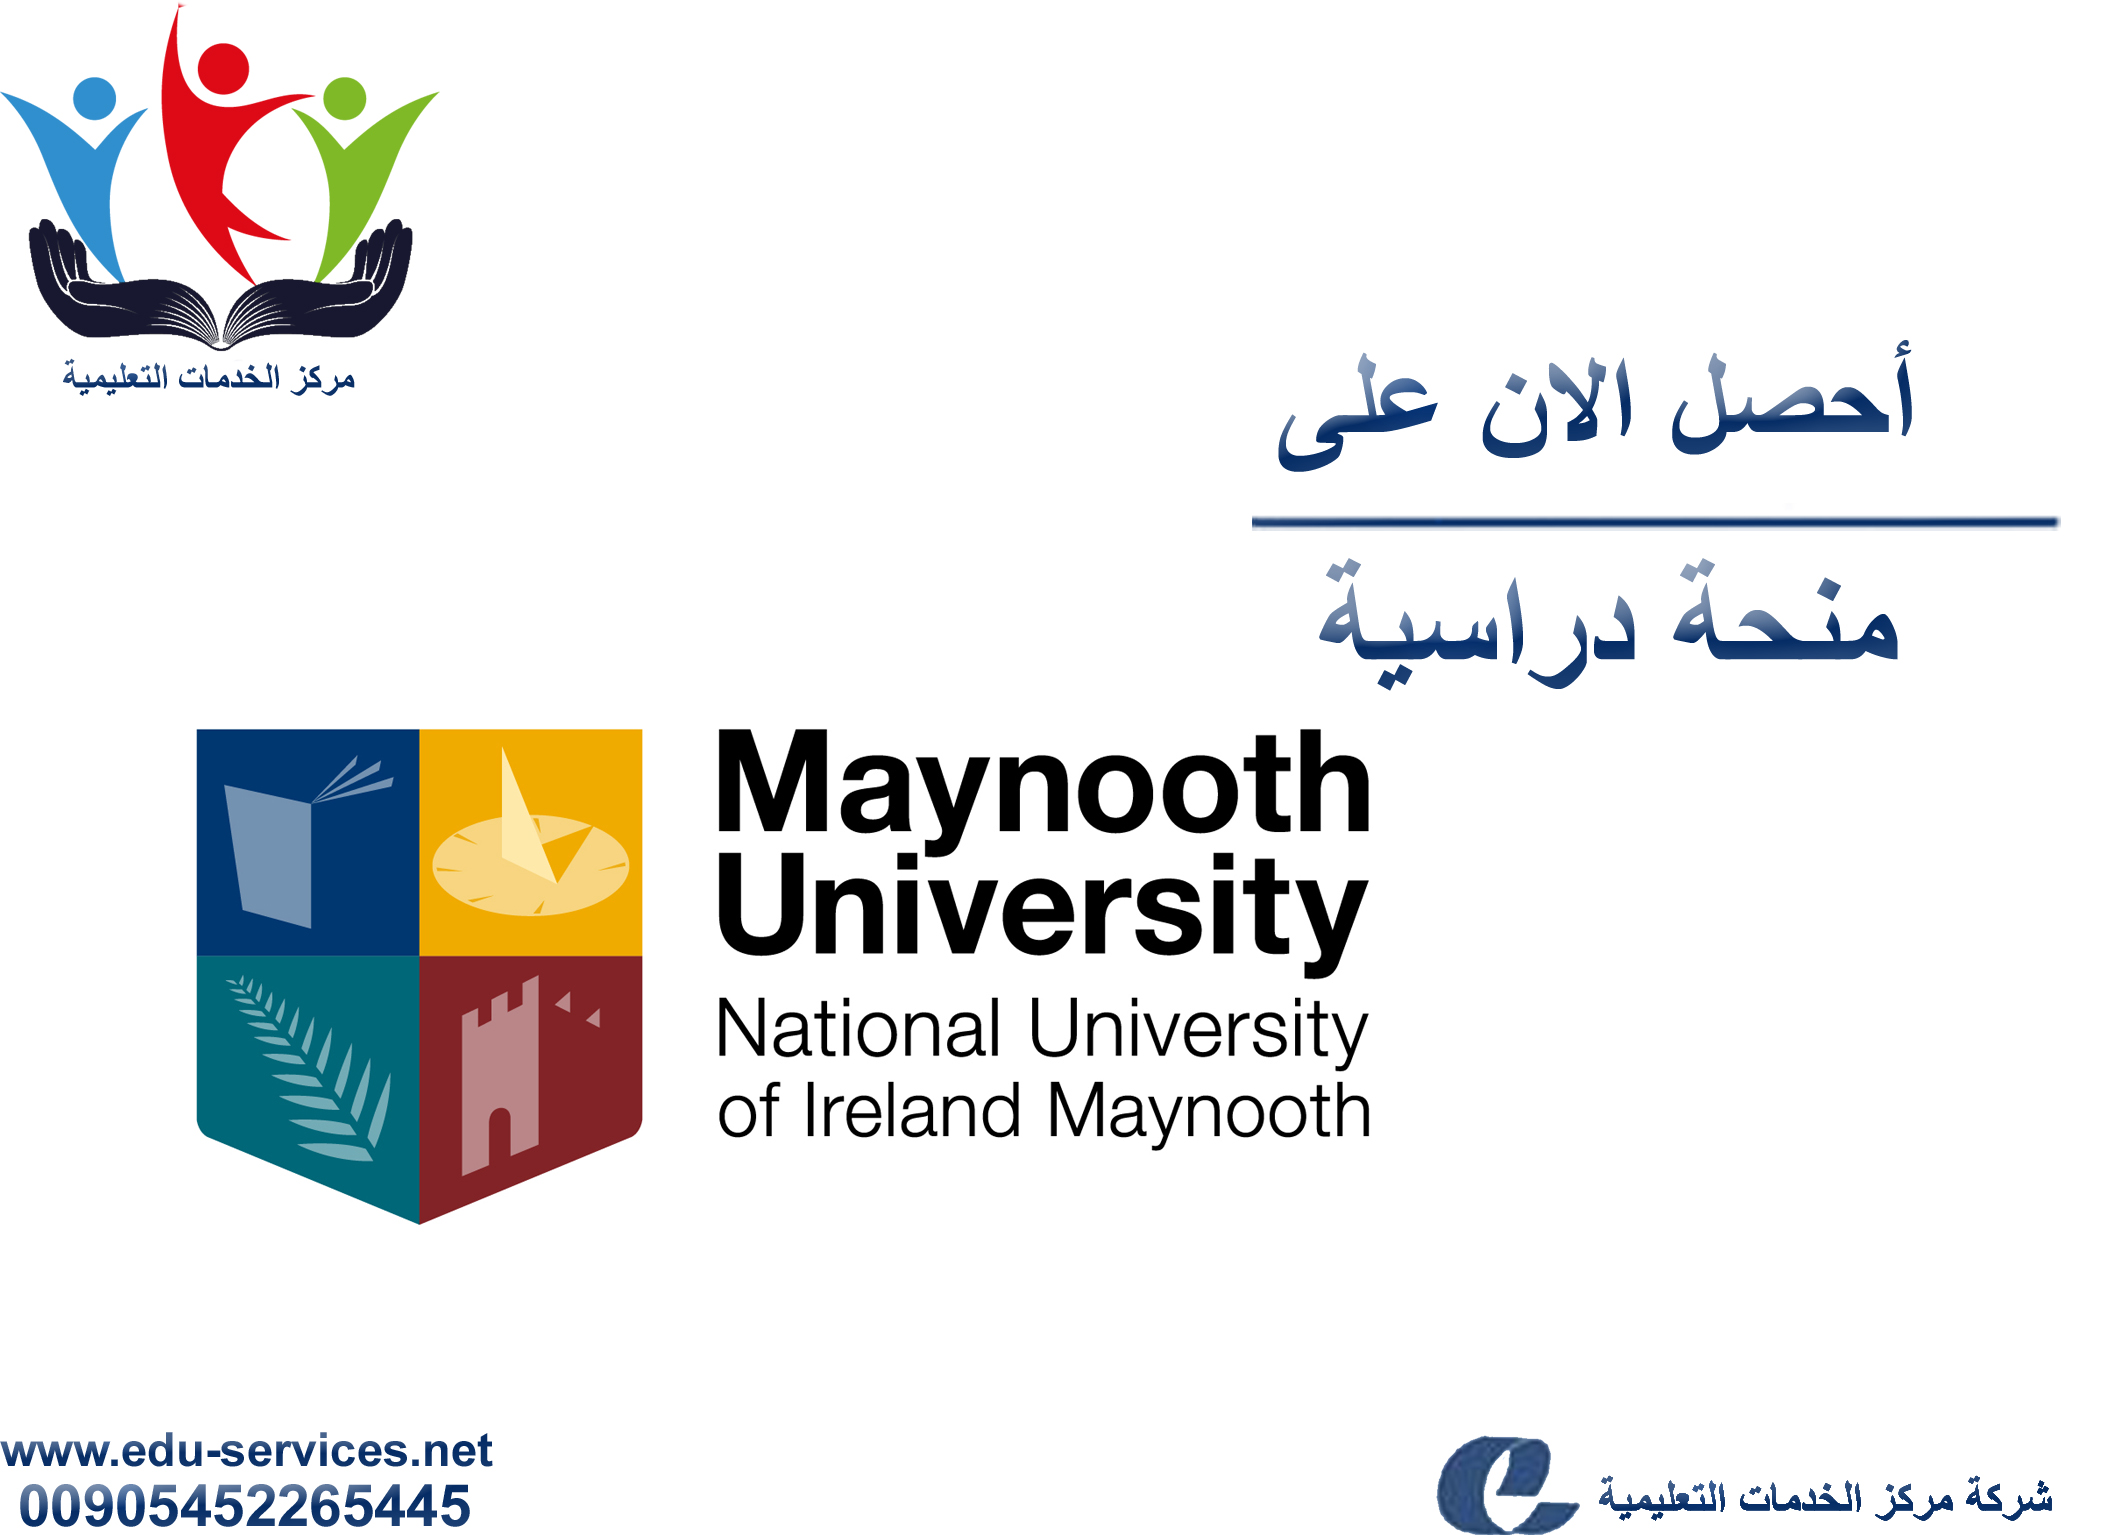 منح دراسية لدرجة الماجستير من MU في أيرلندا للعام 2018